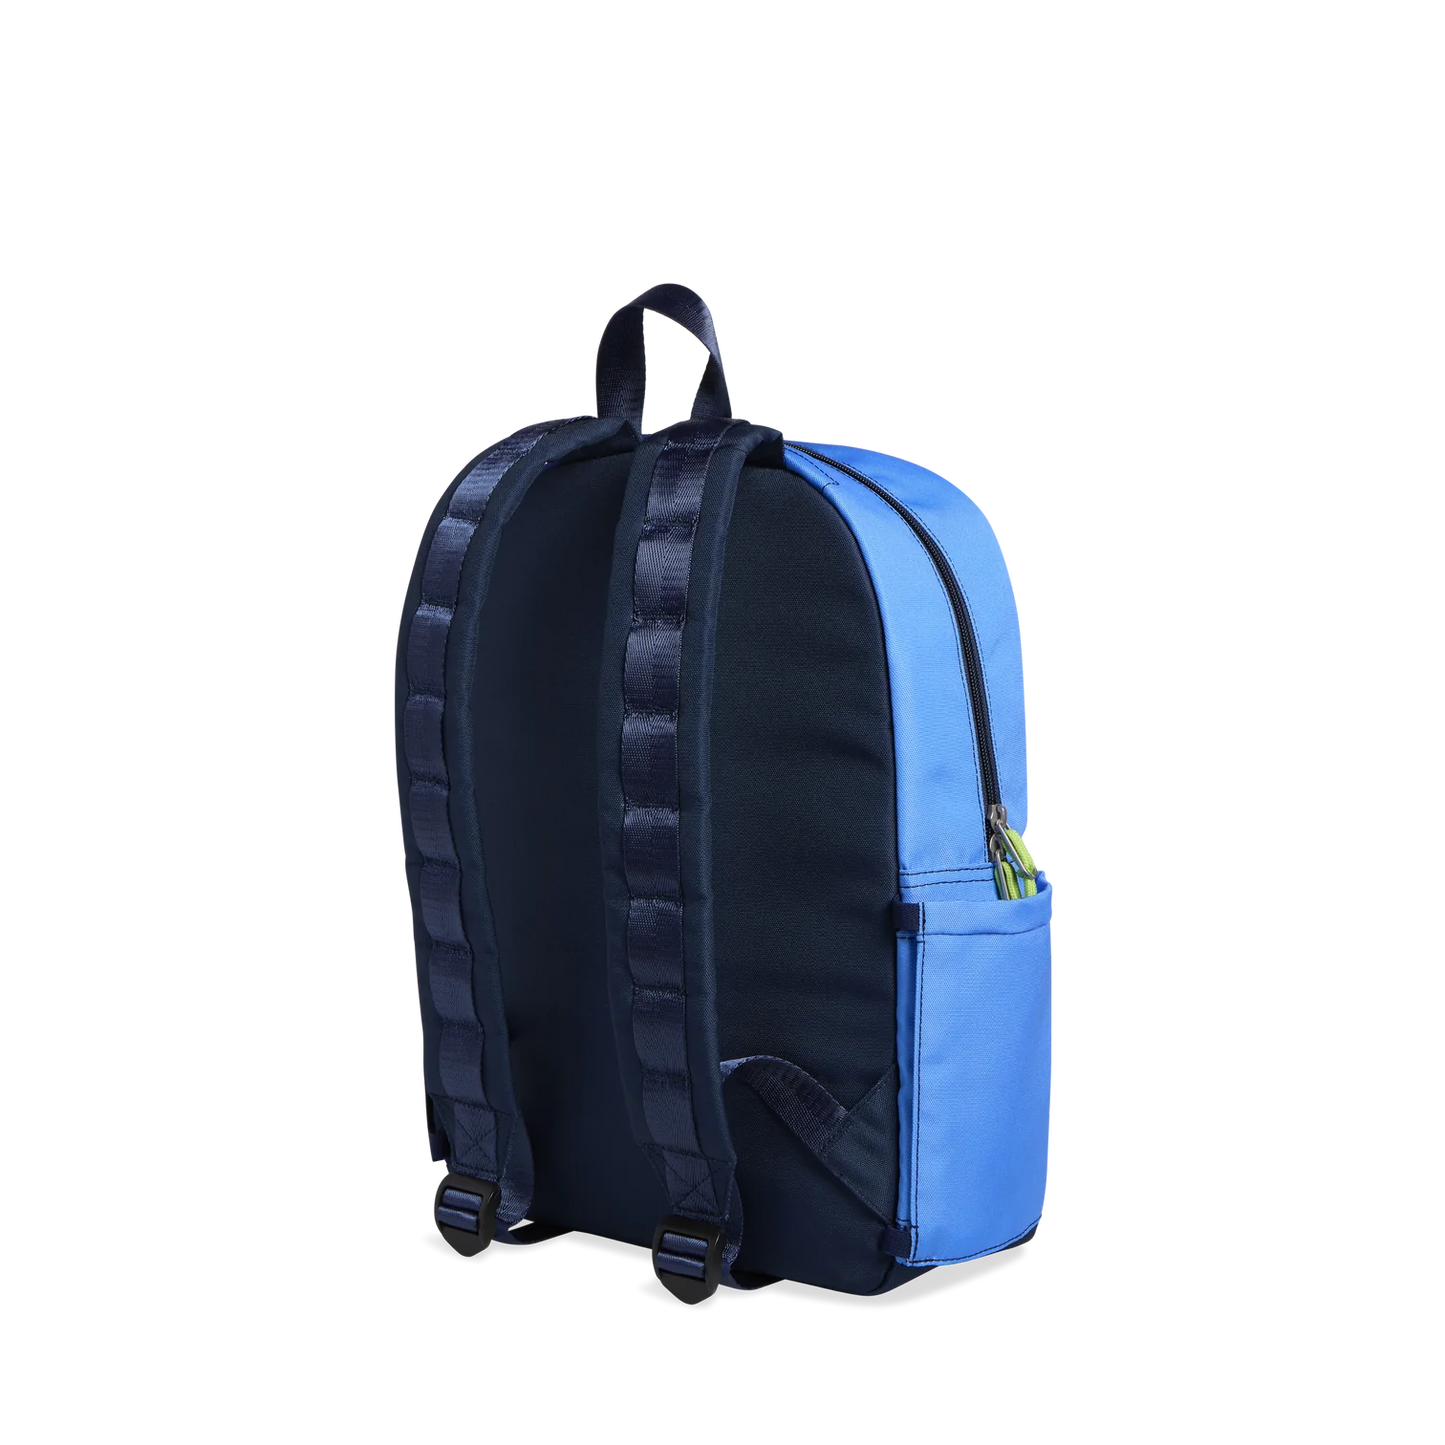 Kane Kids Travel Backpack- Ombre Blue/Black - Lulie